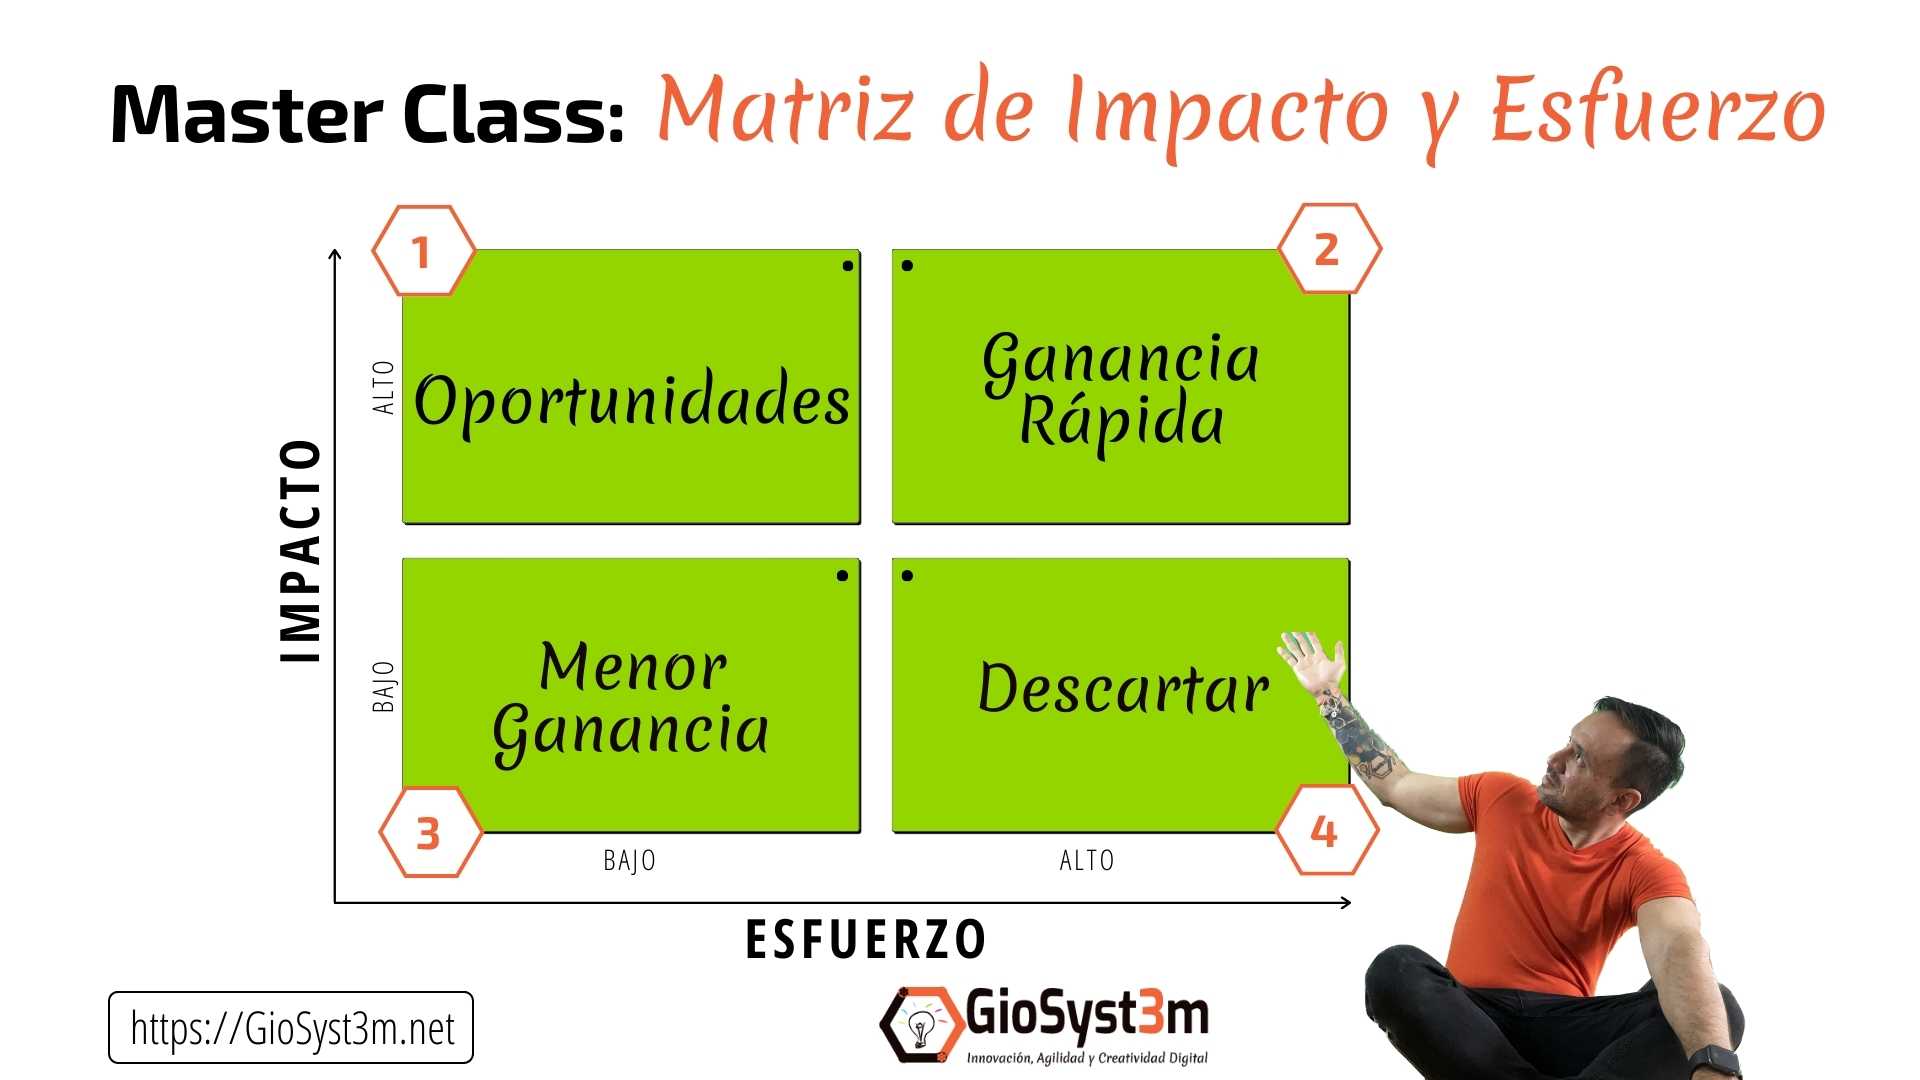 Master Class: Matriz de Impacto y Esfuerzo - GioSyst3m